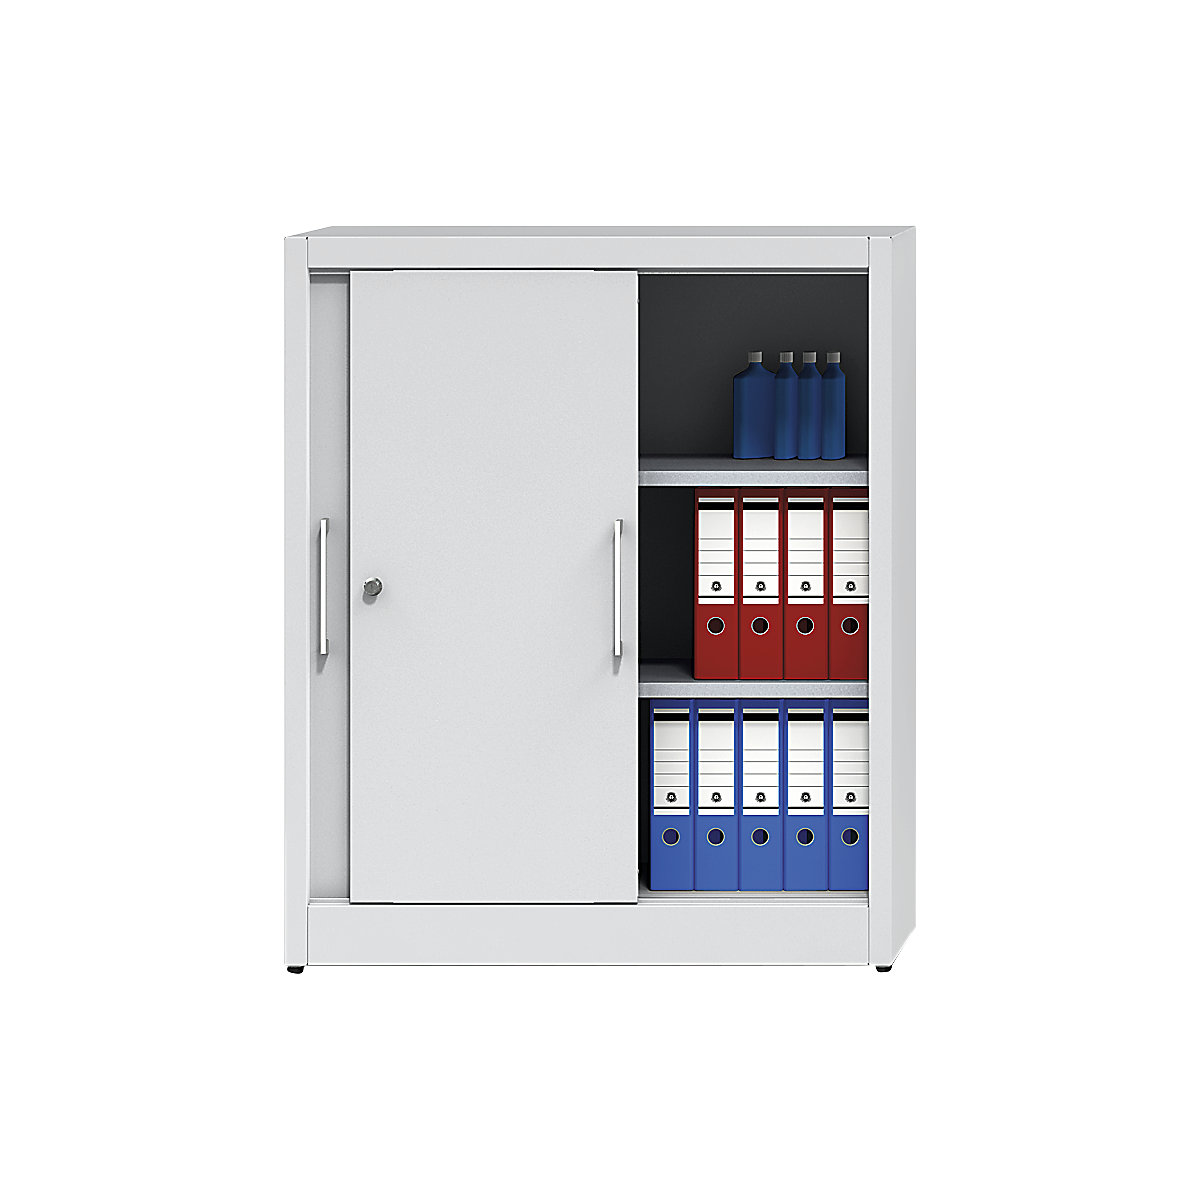 Sliding door cupboard, height 1200 mm – eurokraft pro, with 2 shelves, HxW 1200 x 1000 mm, depth 420 mm, doors in light blue RAL 5012-5